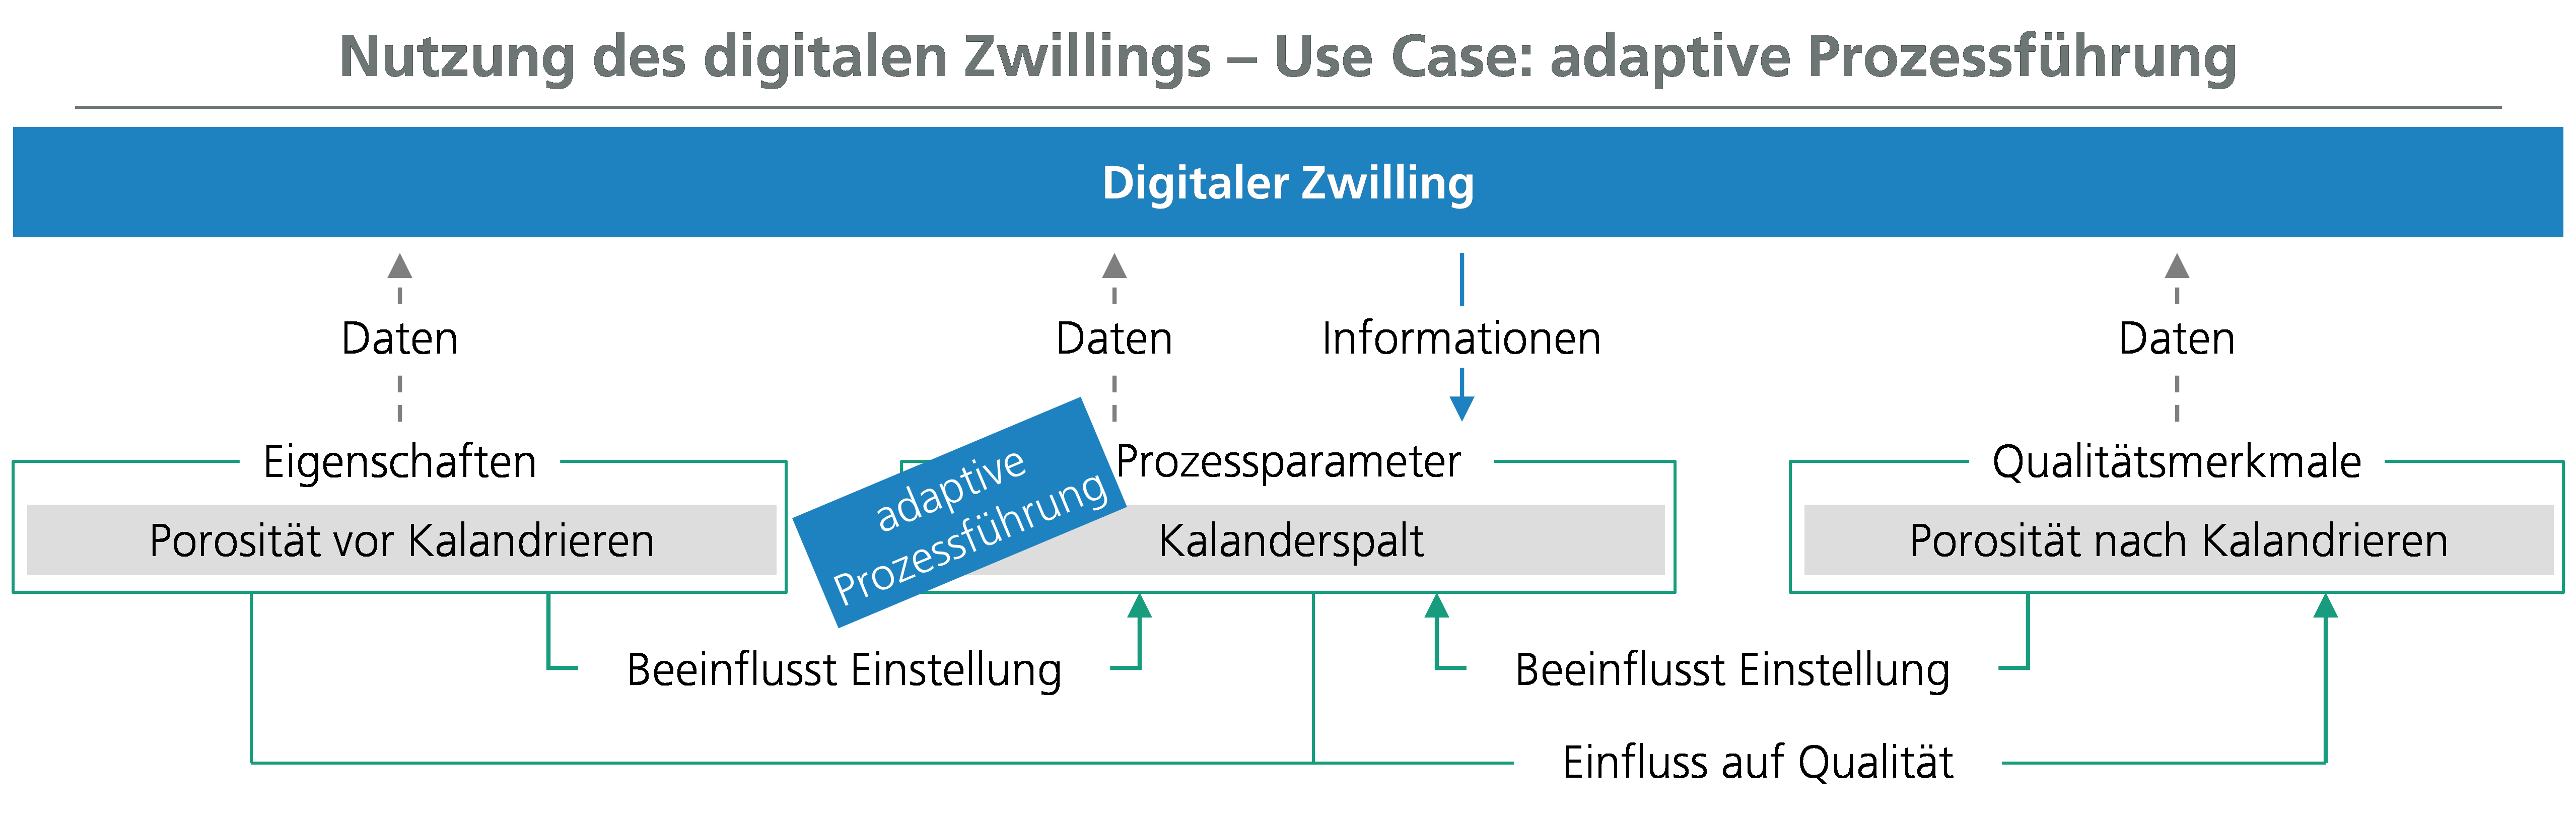 Der digitale Zwilling kann in Use Cases von deskriptiver bis hin zu präskriptiver Analytik realisiert werden.